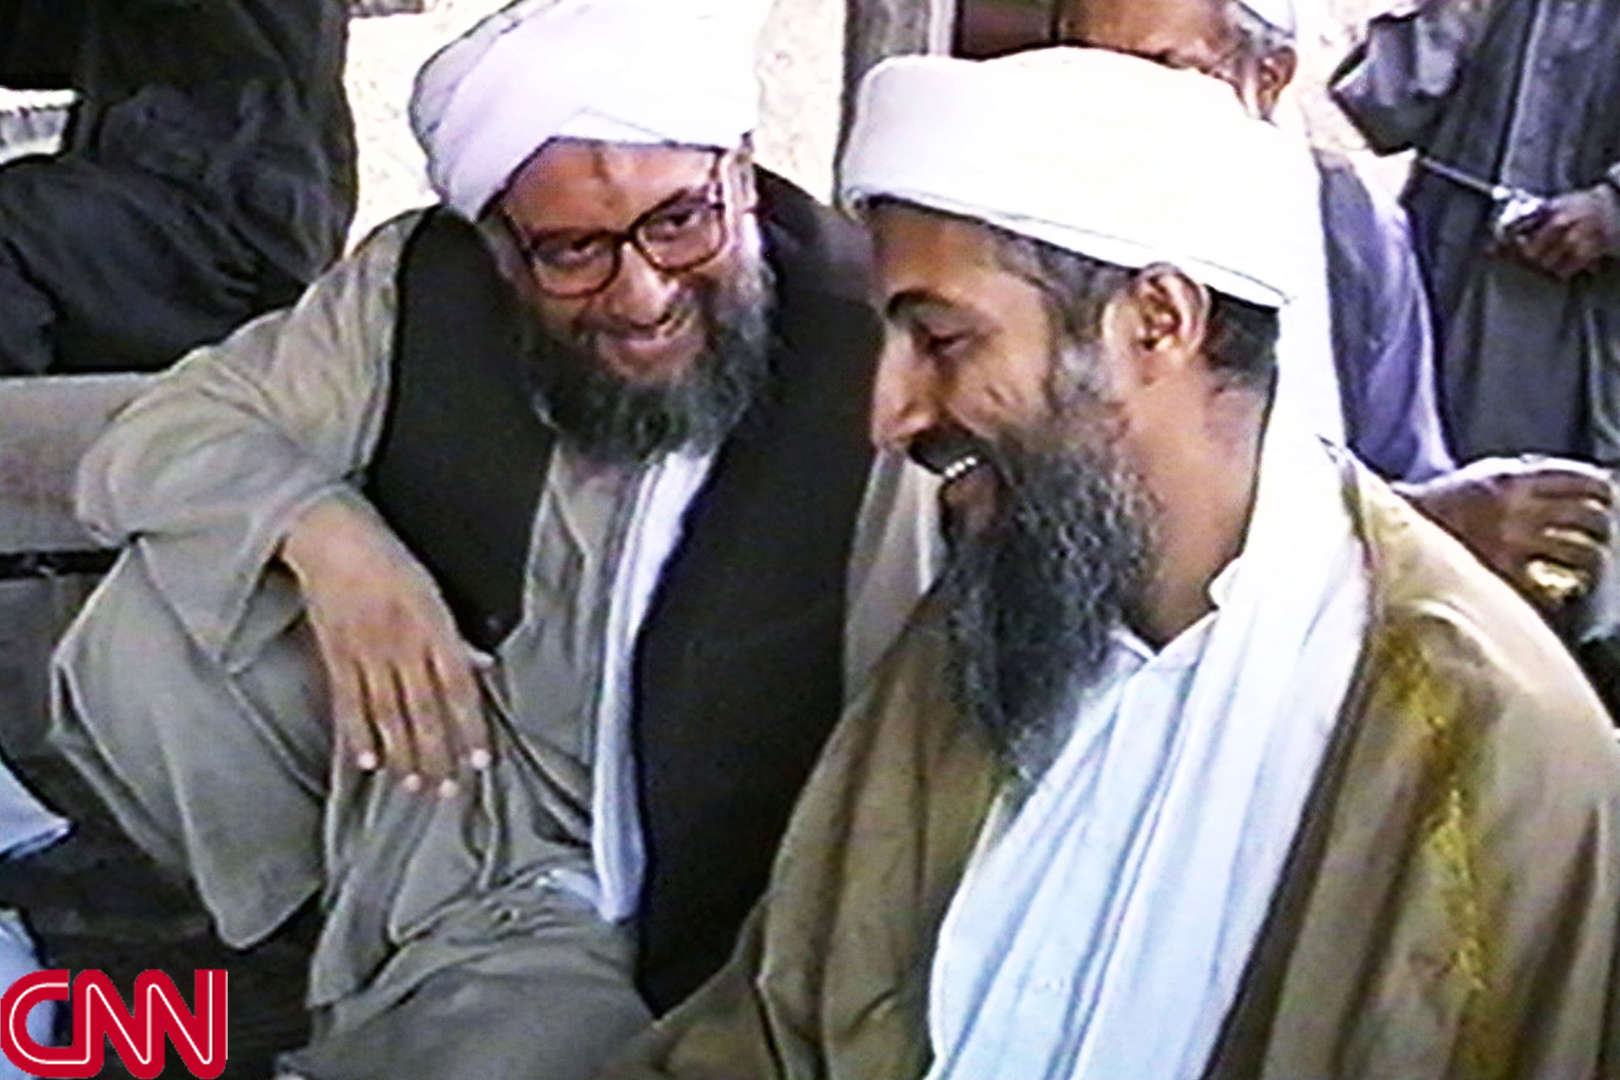 Diapositiva 9 di 25: Che sia stato il vero cervello degli attentati del 2001 era la convinzione di alcuni esperti del New York Times già all'indomani della tragedia: allo straordinario carisma di Osama bin Laden, infatti, avevano associato l'importanza strategica della figura di al-Zawahiri, capace, a detta dei massimi conoscitori del mondo del fondamentalismo, di fornire all'organizzazione quell'intelligenza e astuzia tattica necessarie per progettare attentati di tale magnitudine.